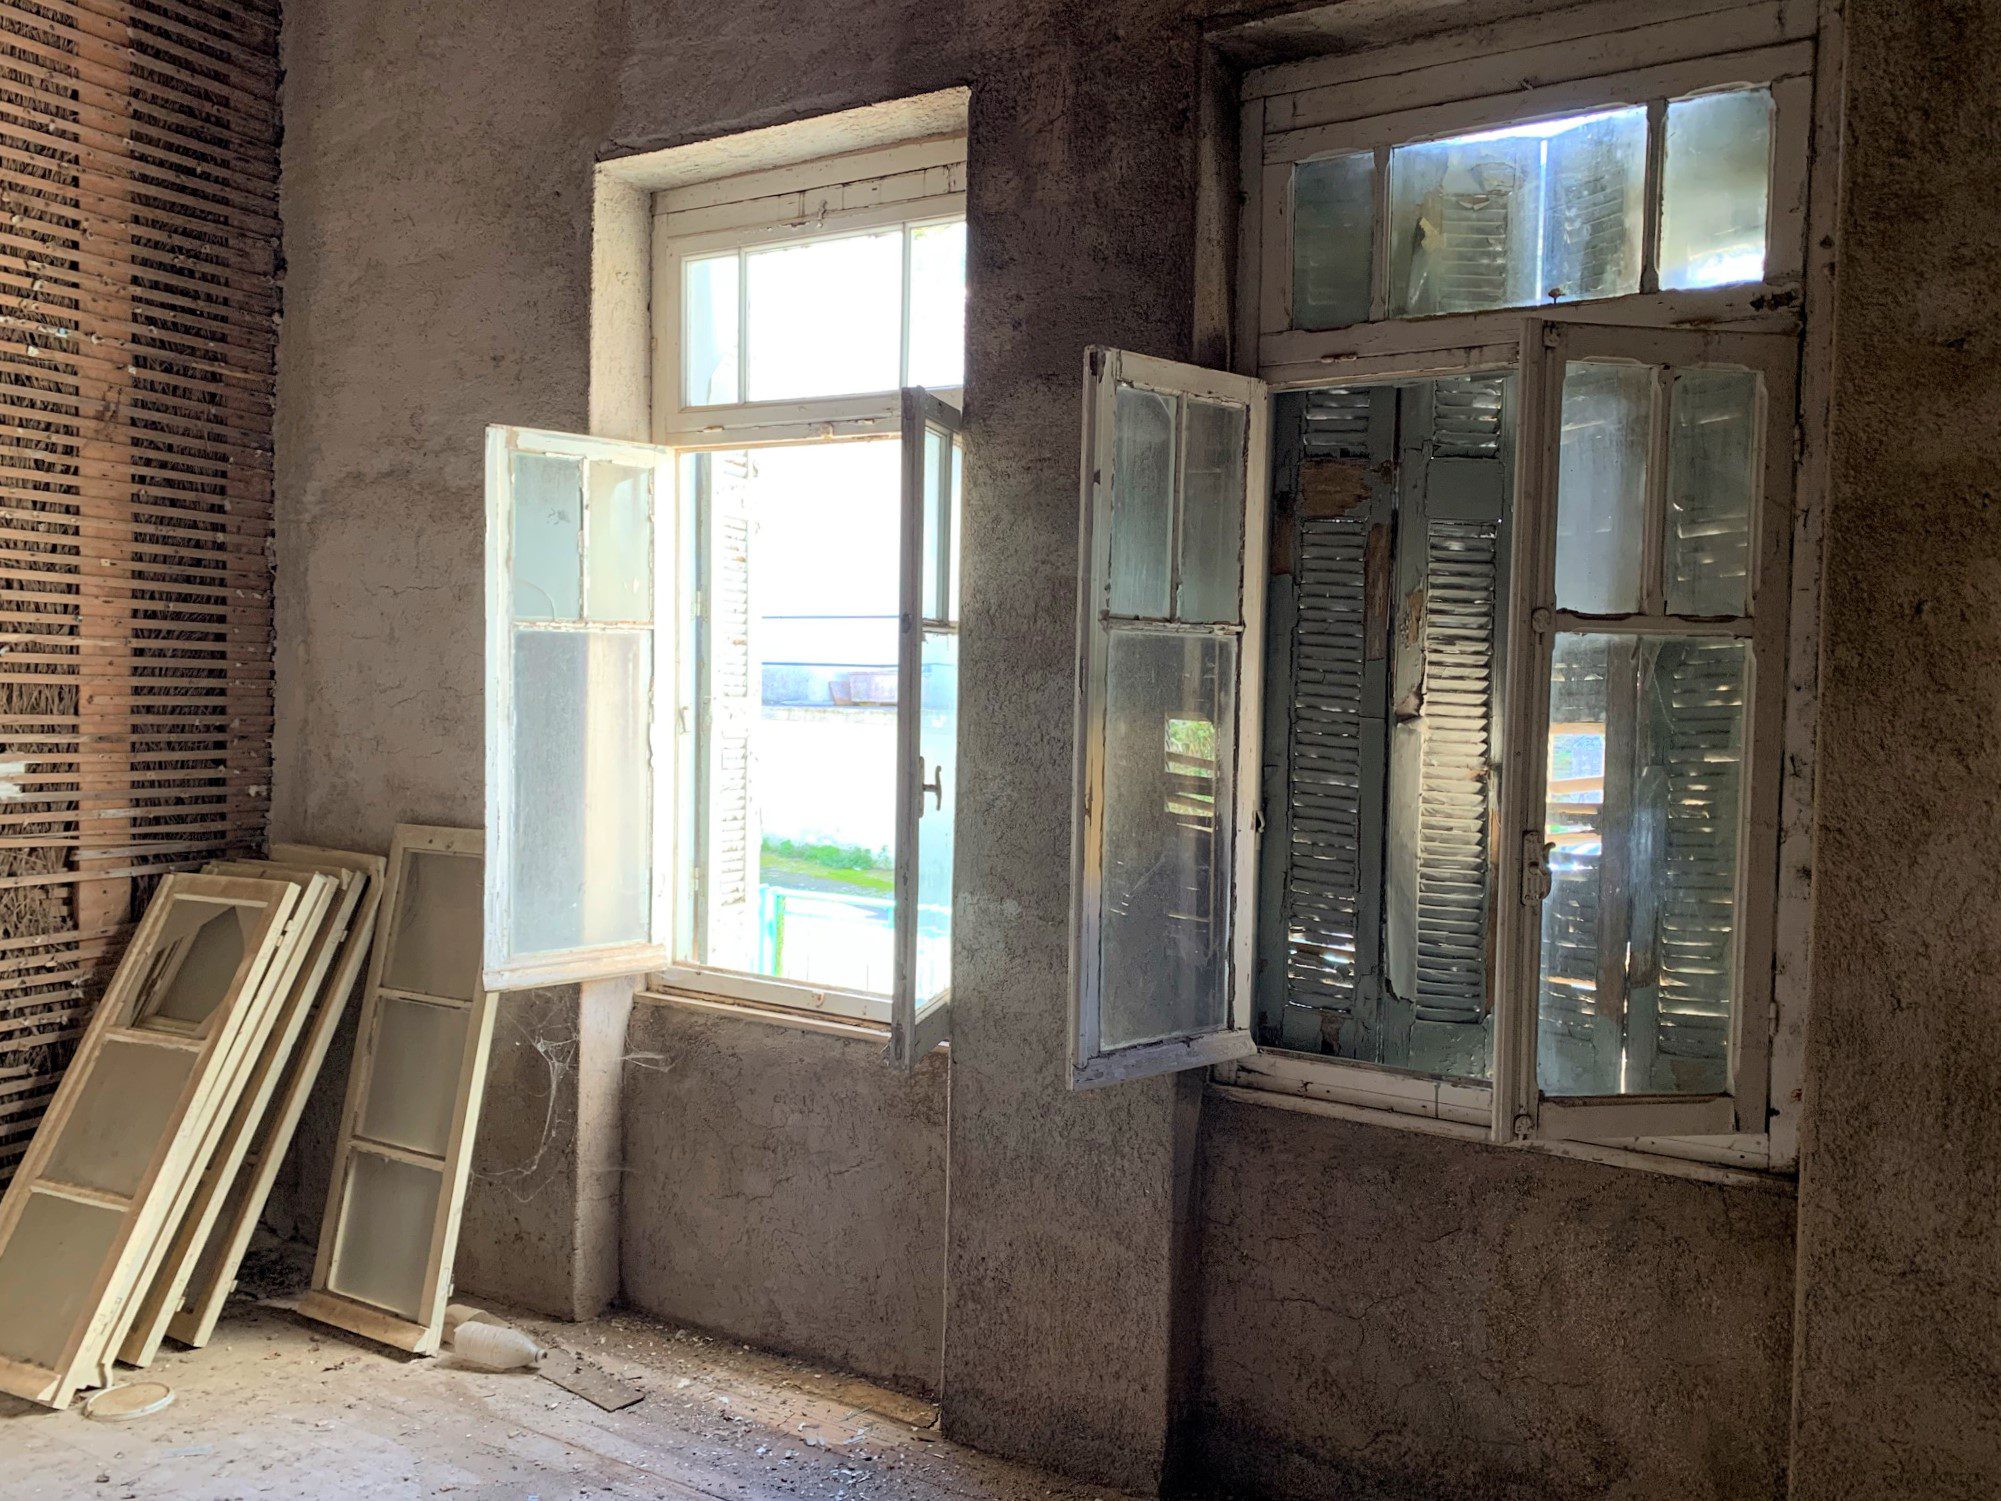 εσωτερικός χώρος κατοικίας προς πώληση στην Ιθάκη Ελλάδας Ανώγη